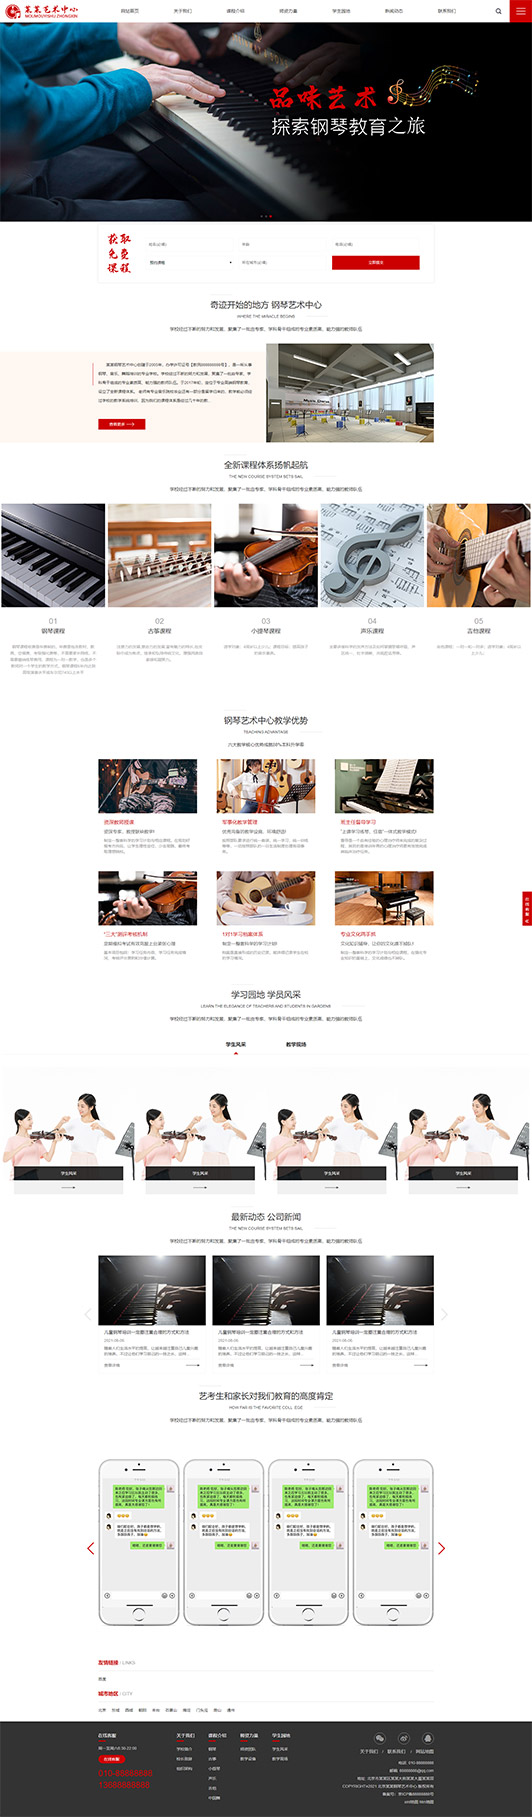 赤峰钢琴艺术培训公司响应式企业网站